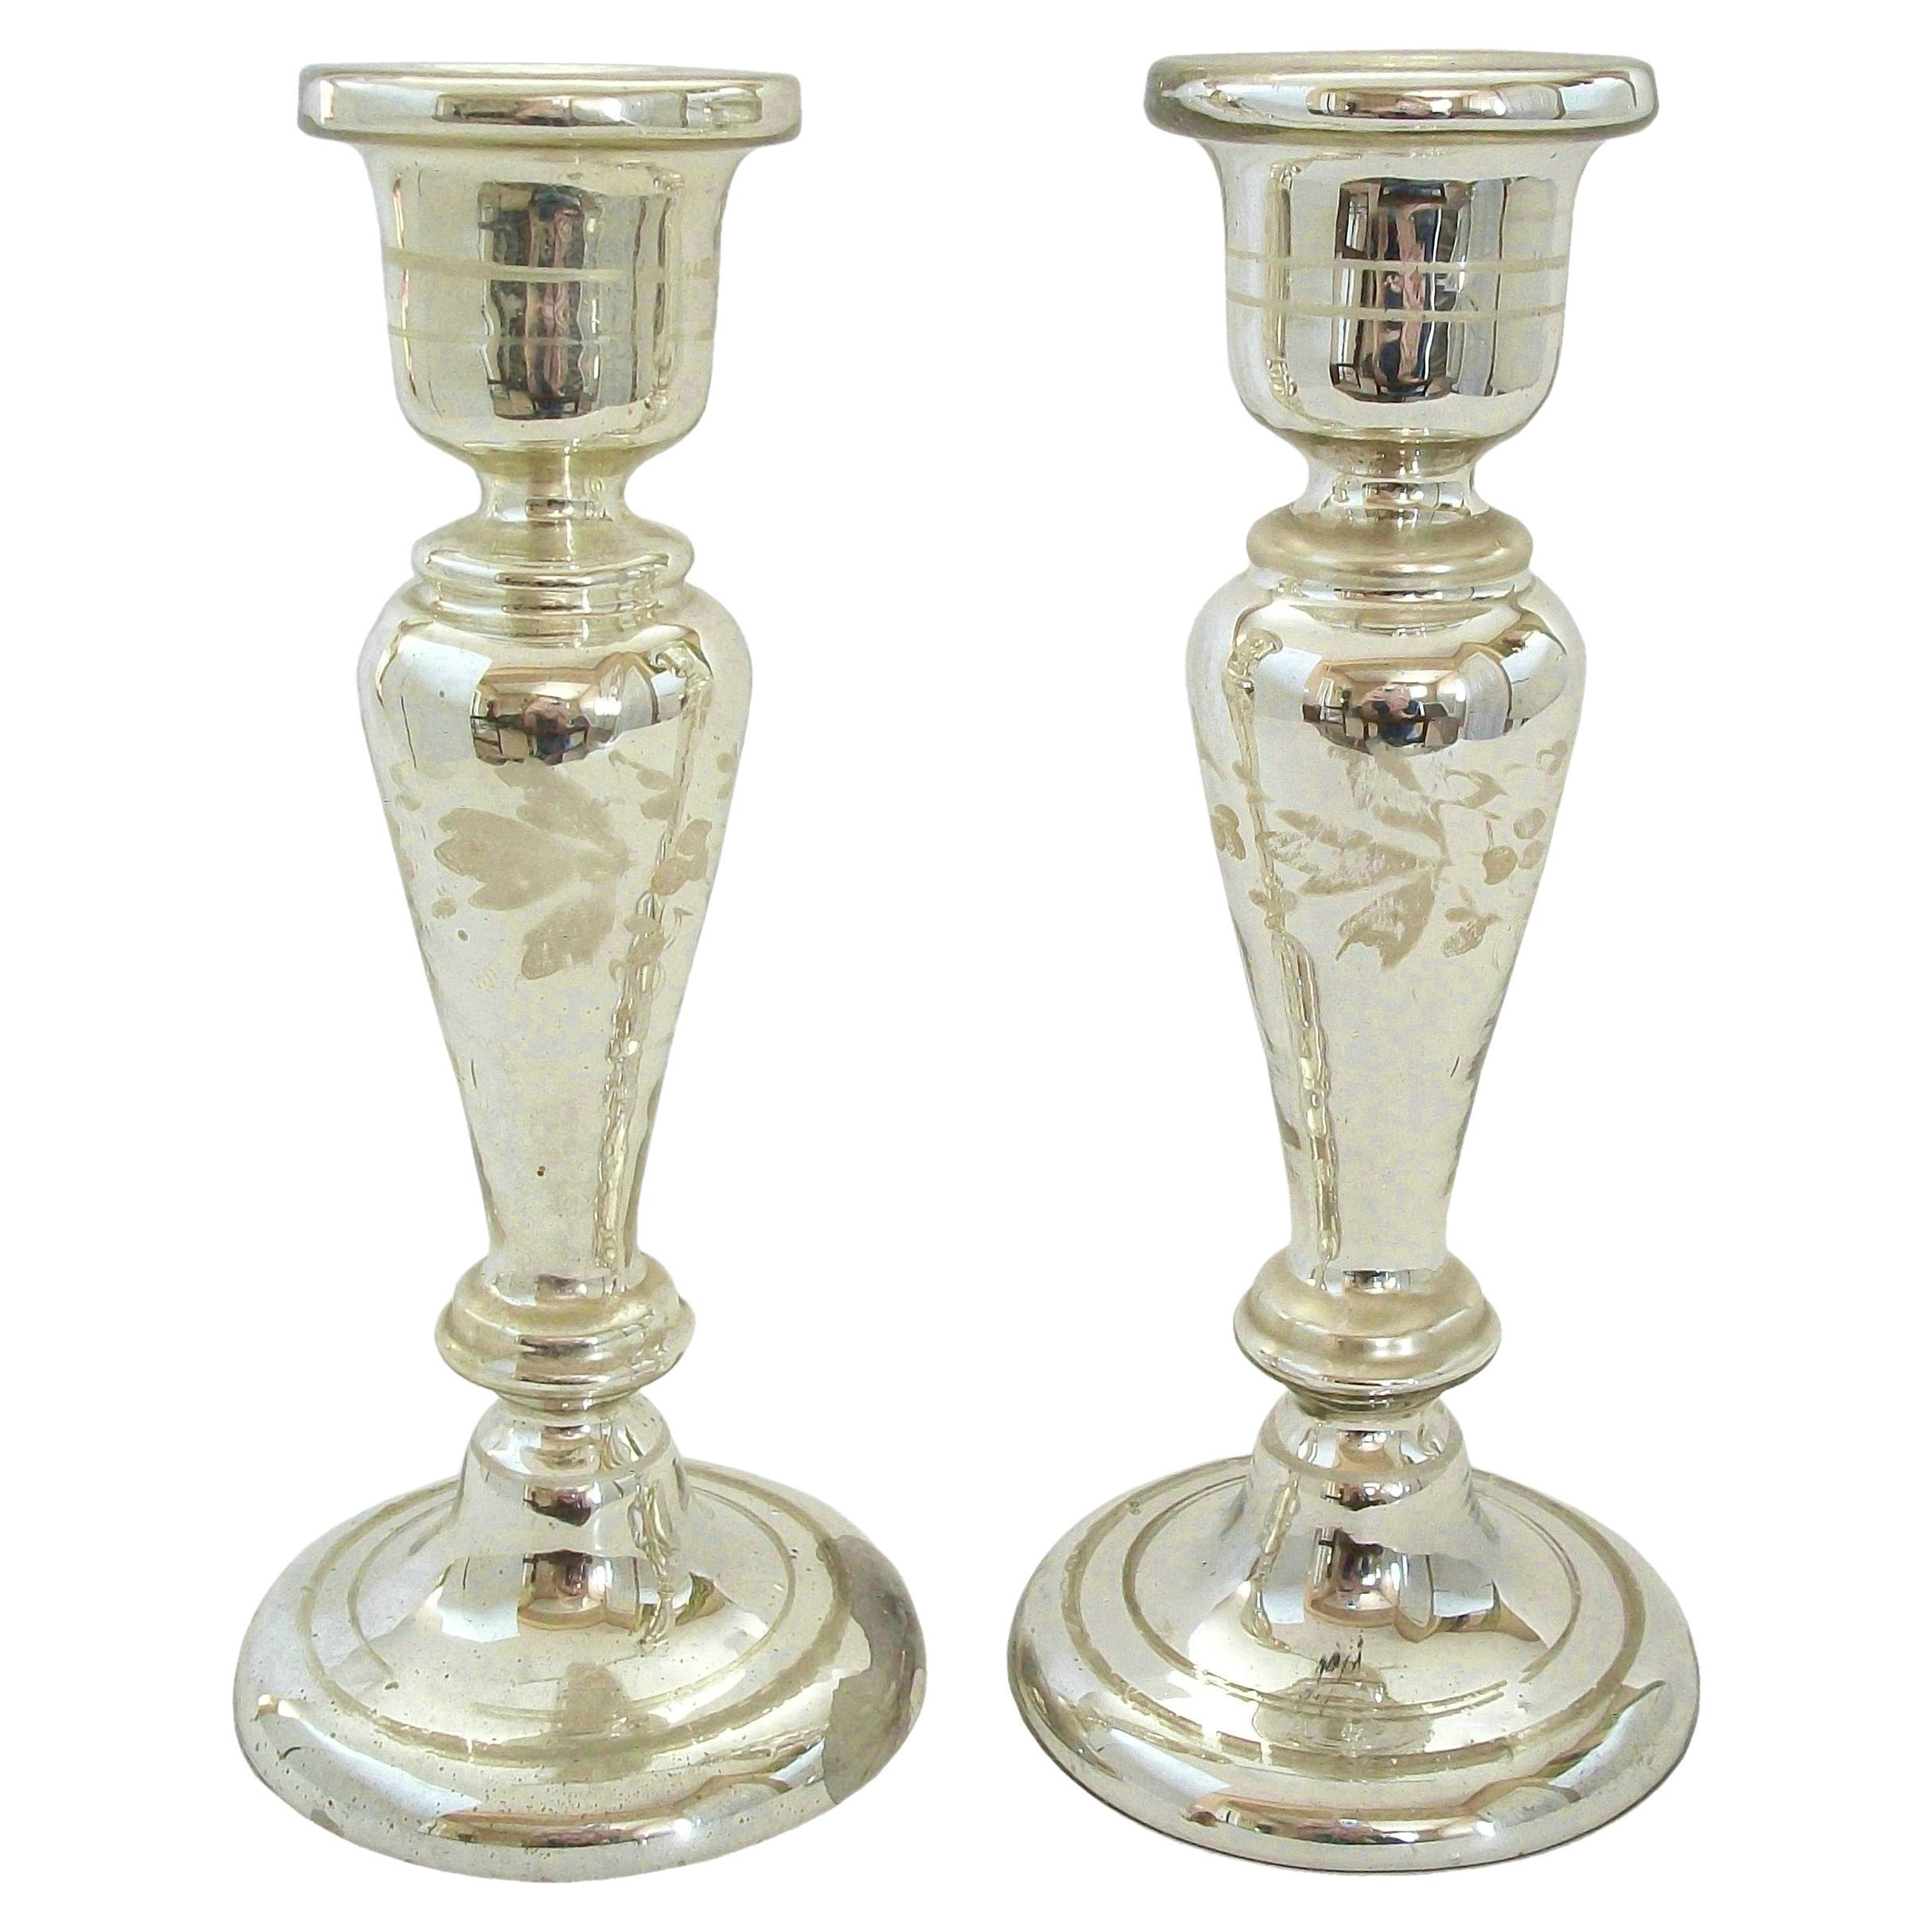 Paire de chandeliers anciens en verre mercuré peint en blanc - France - vers 1880